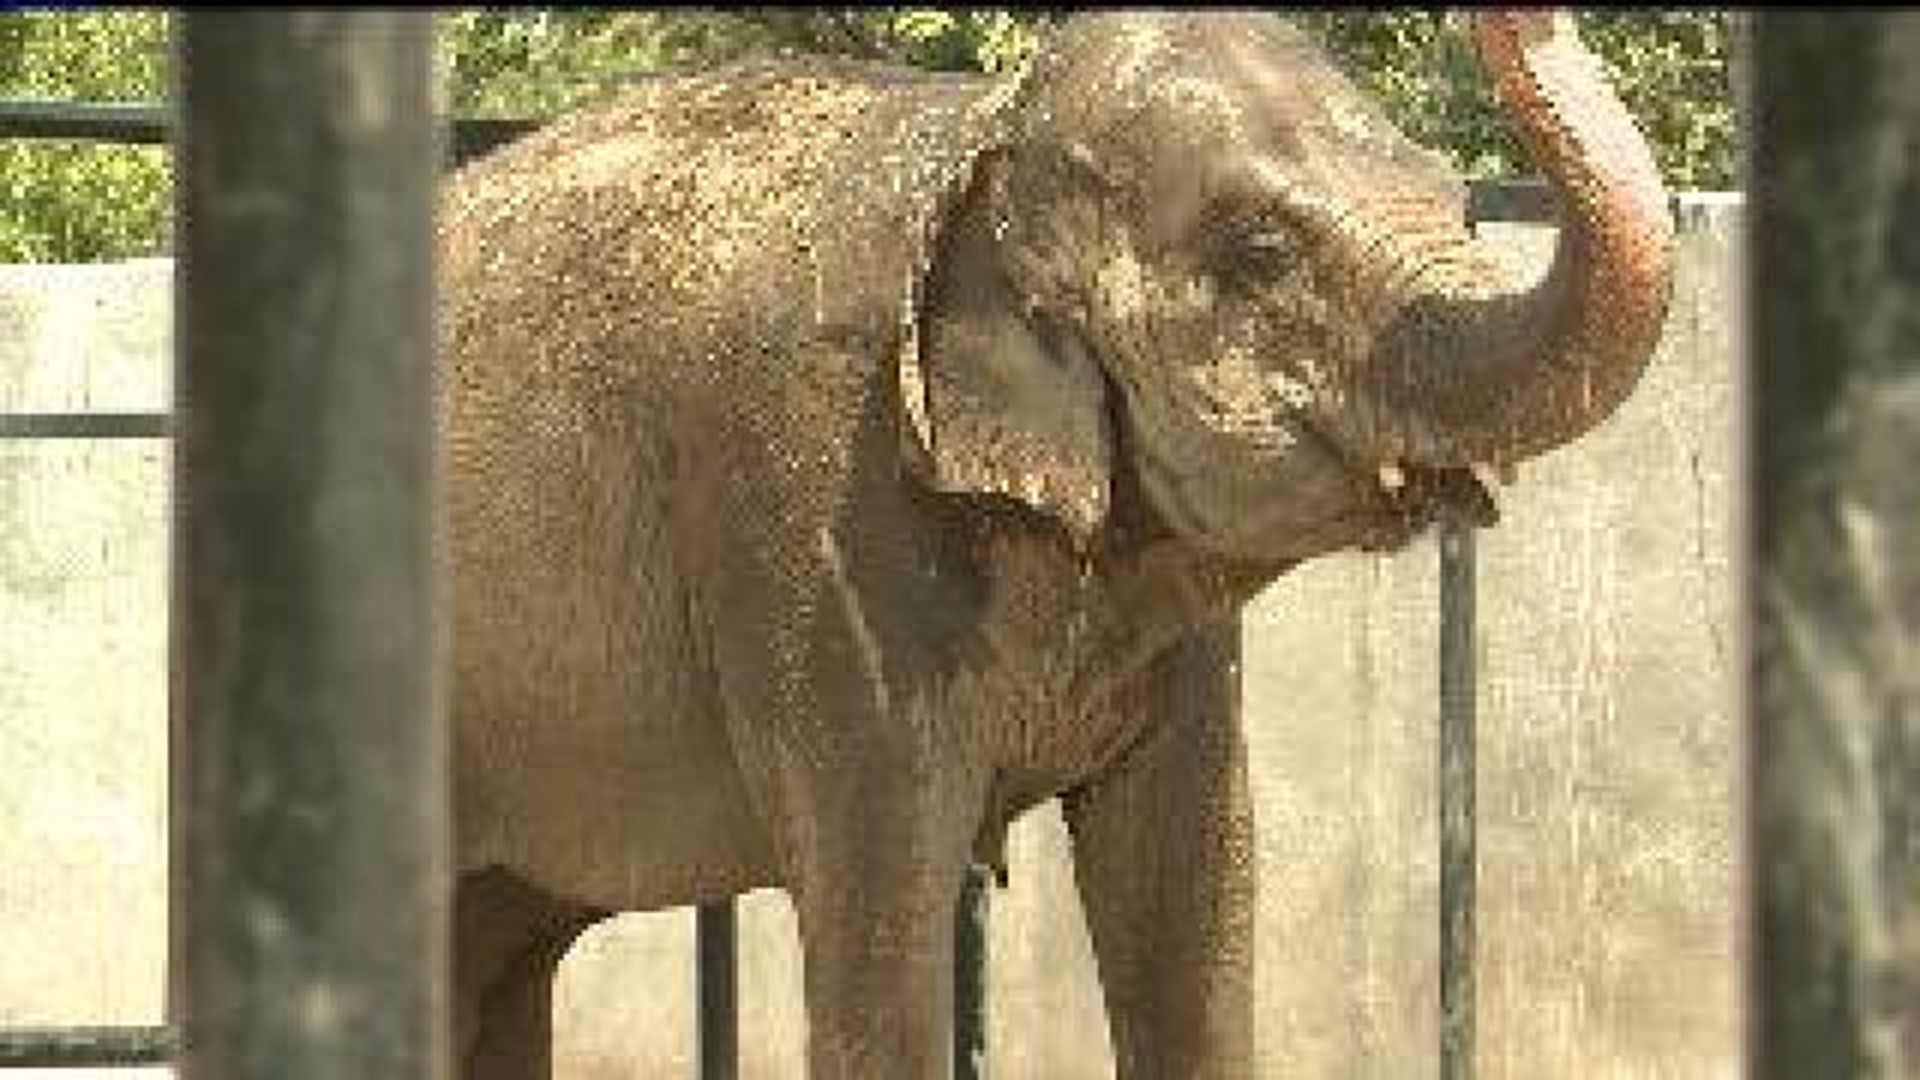 Niabi Zoo elephants celebrate birthdays